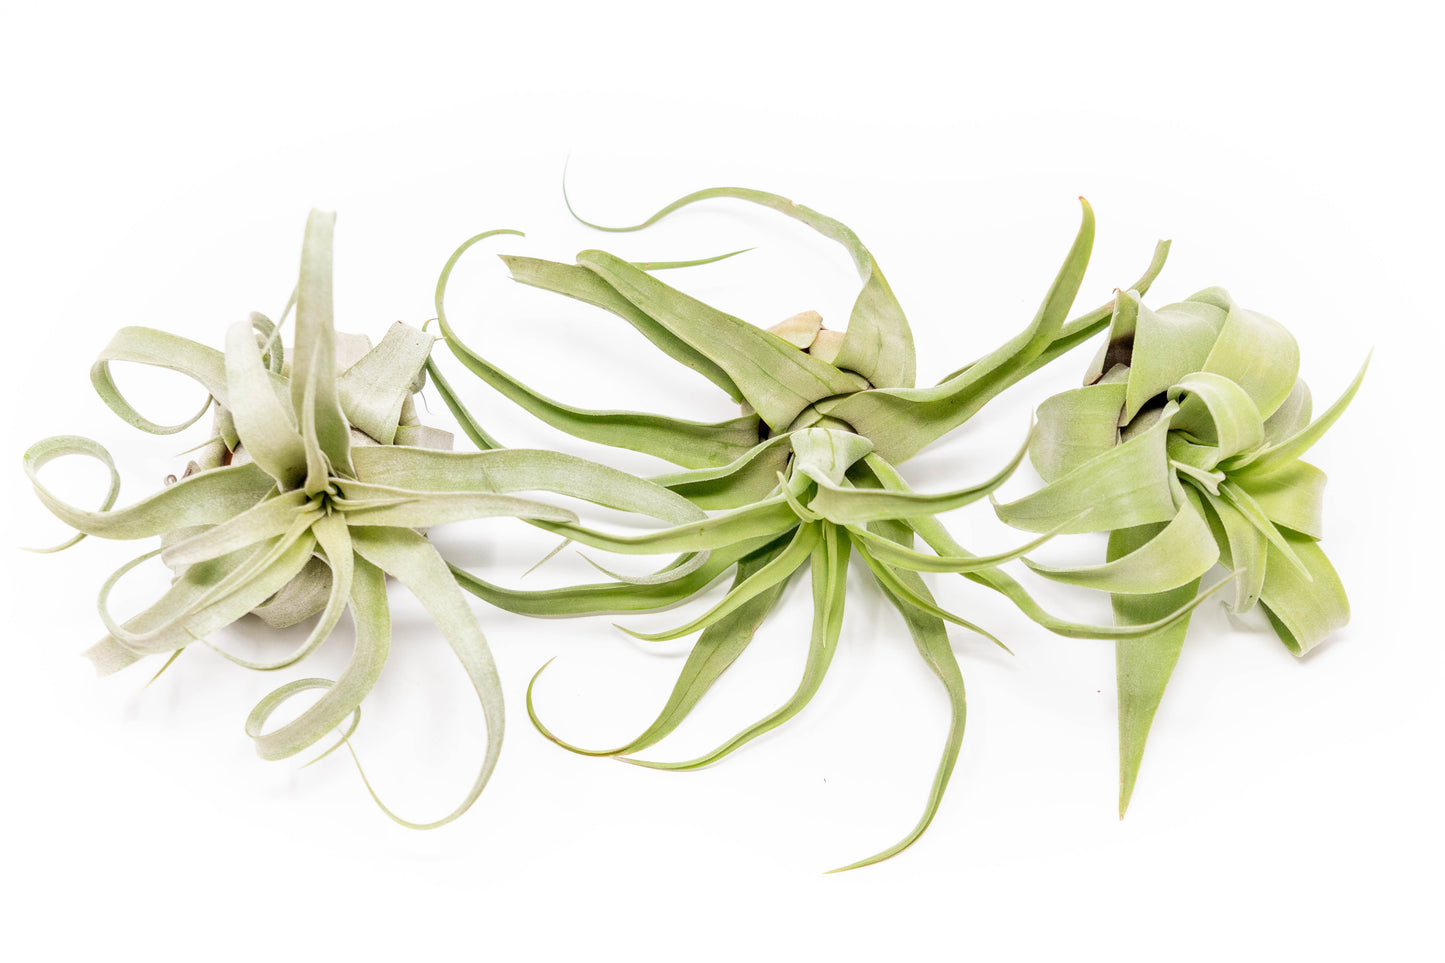 SALE - Tillandsia Streptophylla Air Plants - Set of 3 or 6 - 30% Off